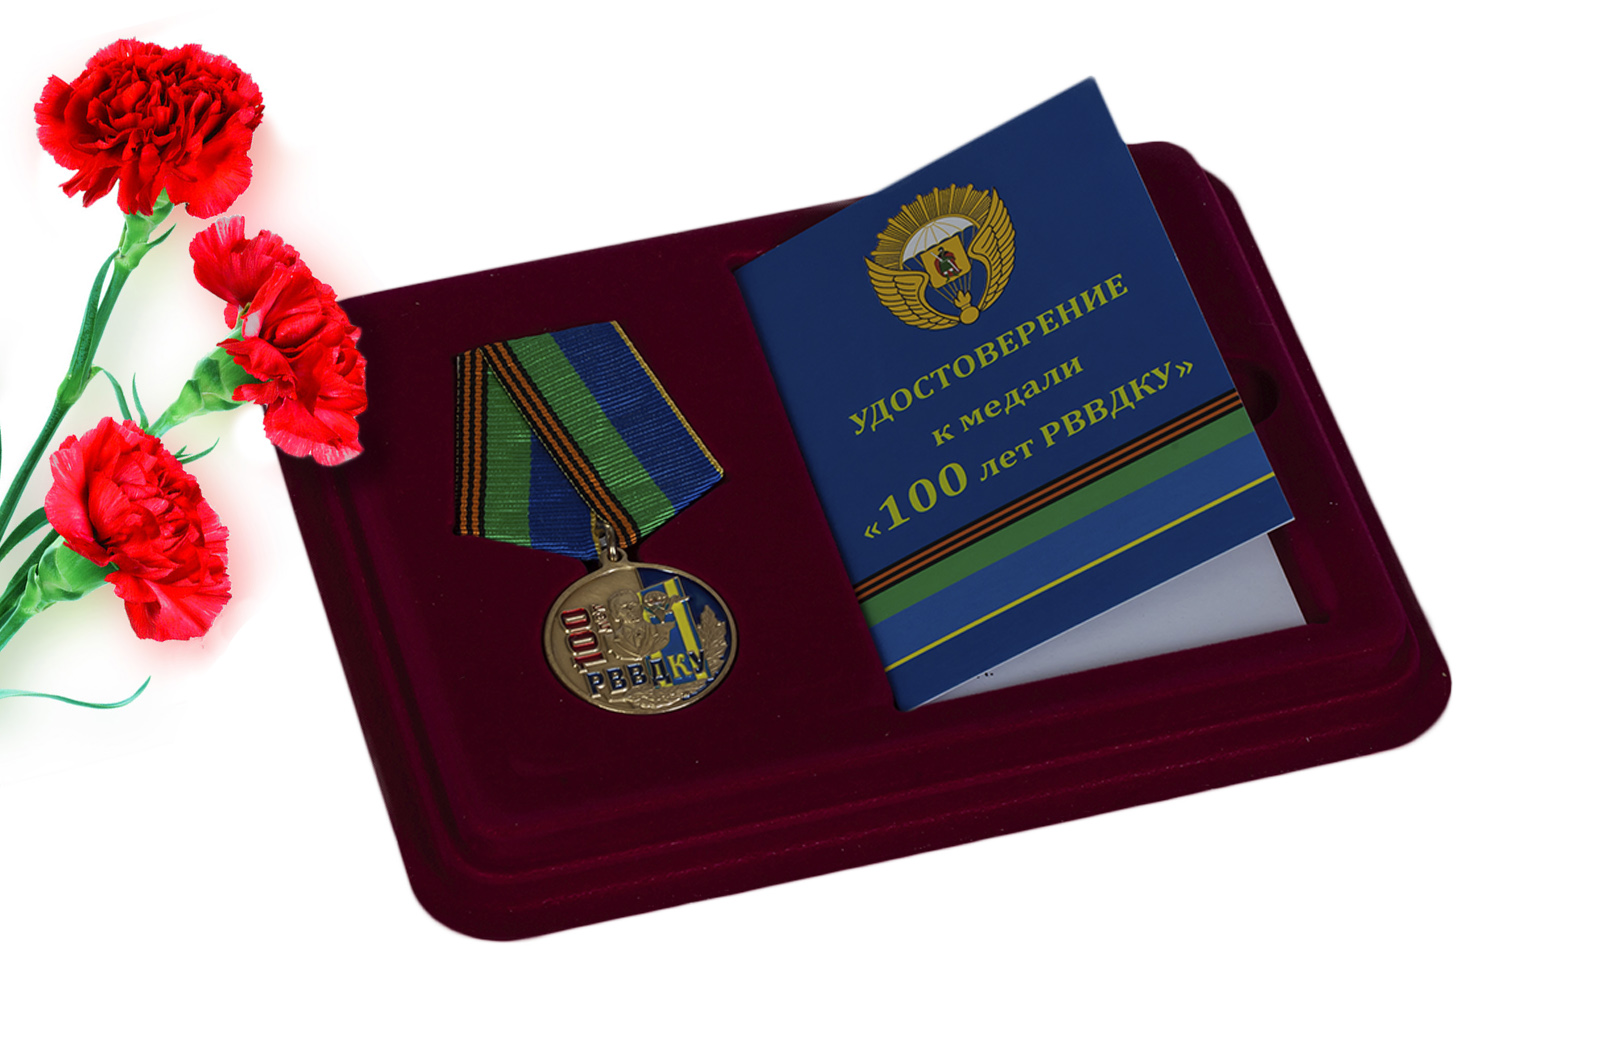 Купить памятную медаль 100 лет РВВДКУ с доставкой в ваш город